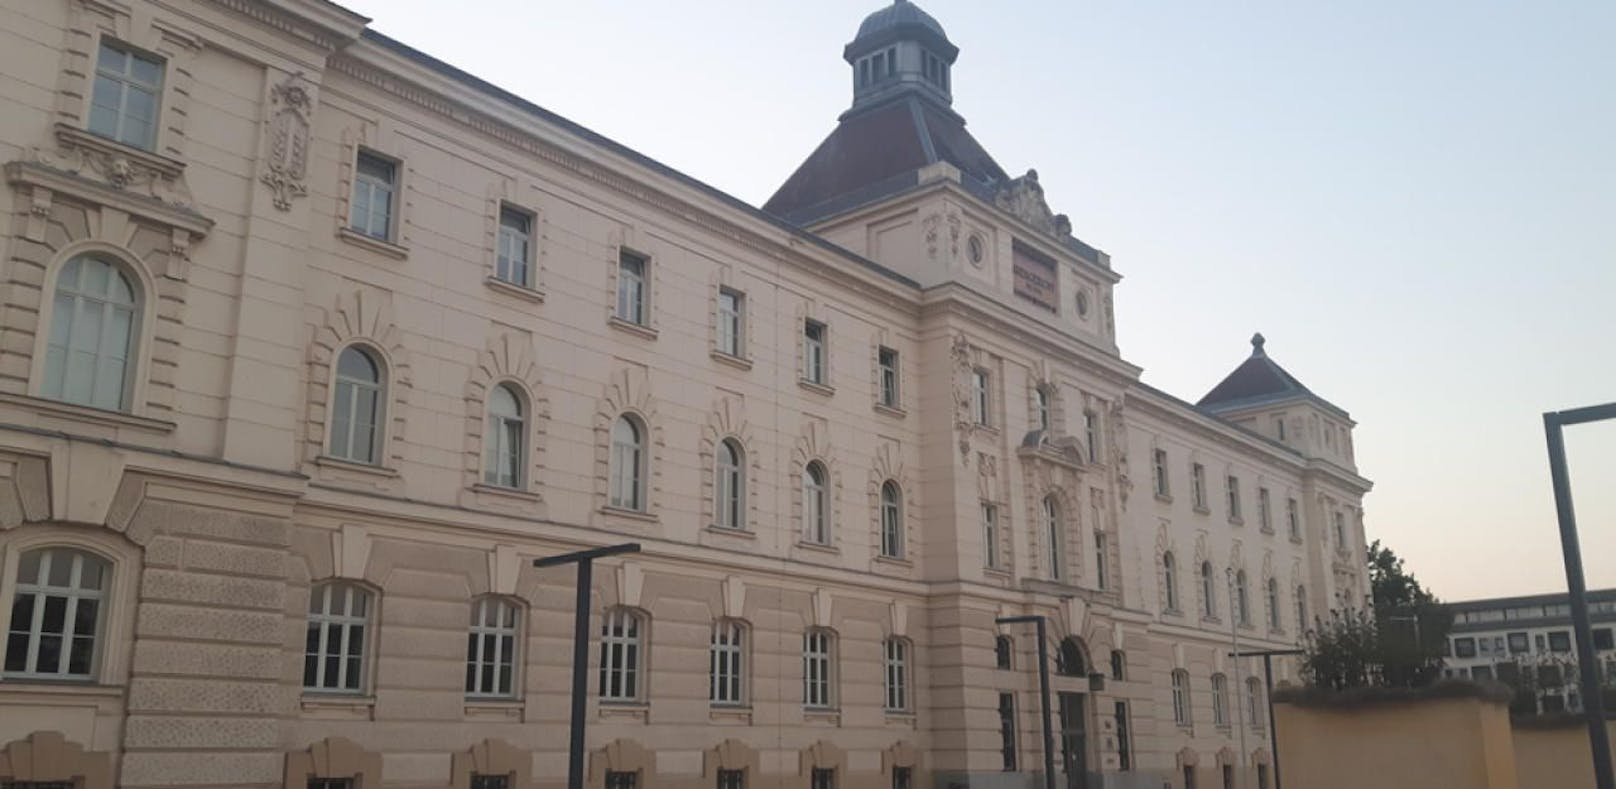 Landesgericht St. Pölten: Ein Teenager wurde diversionell abgefertigt, zwei Angeklagte bekommen Ende September das Urteil.